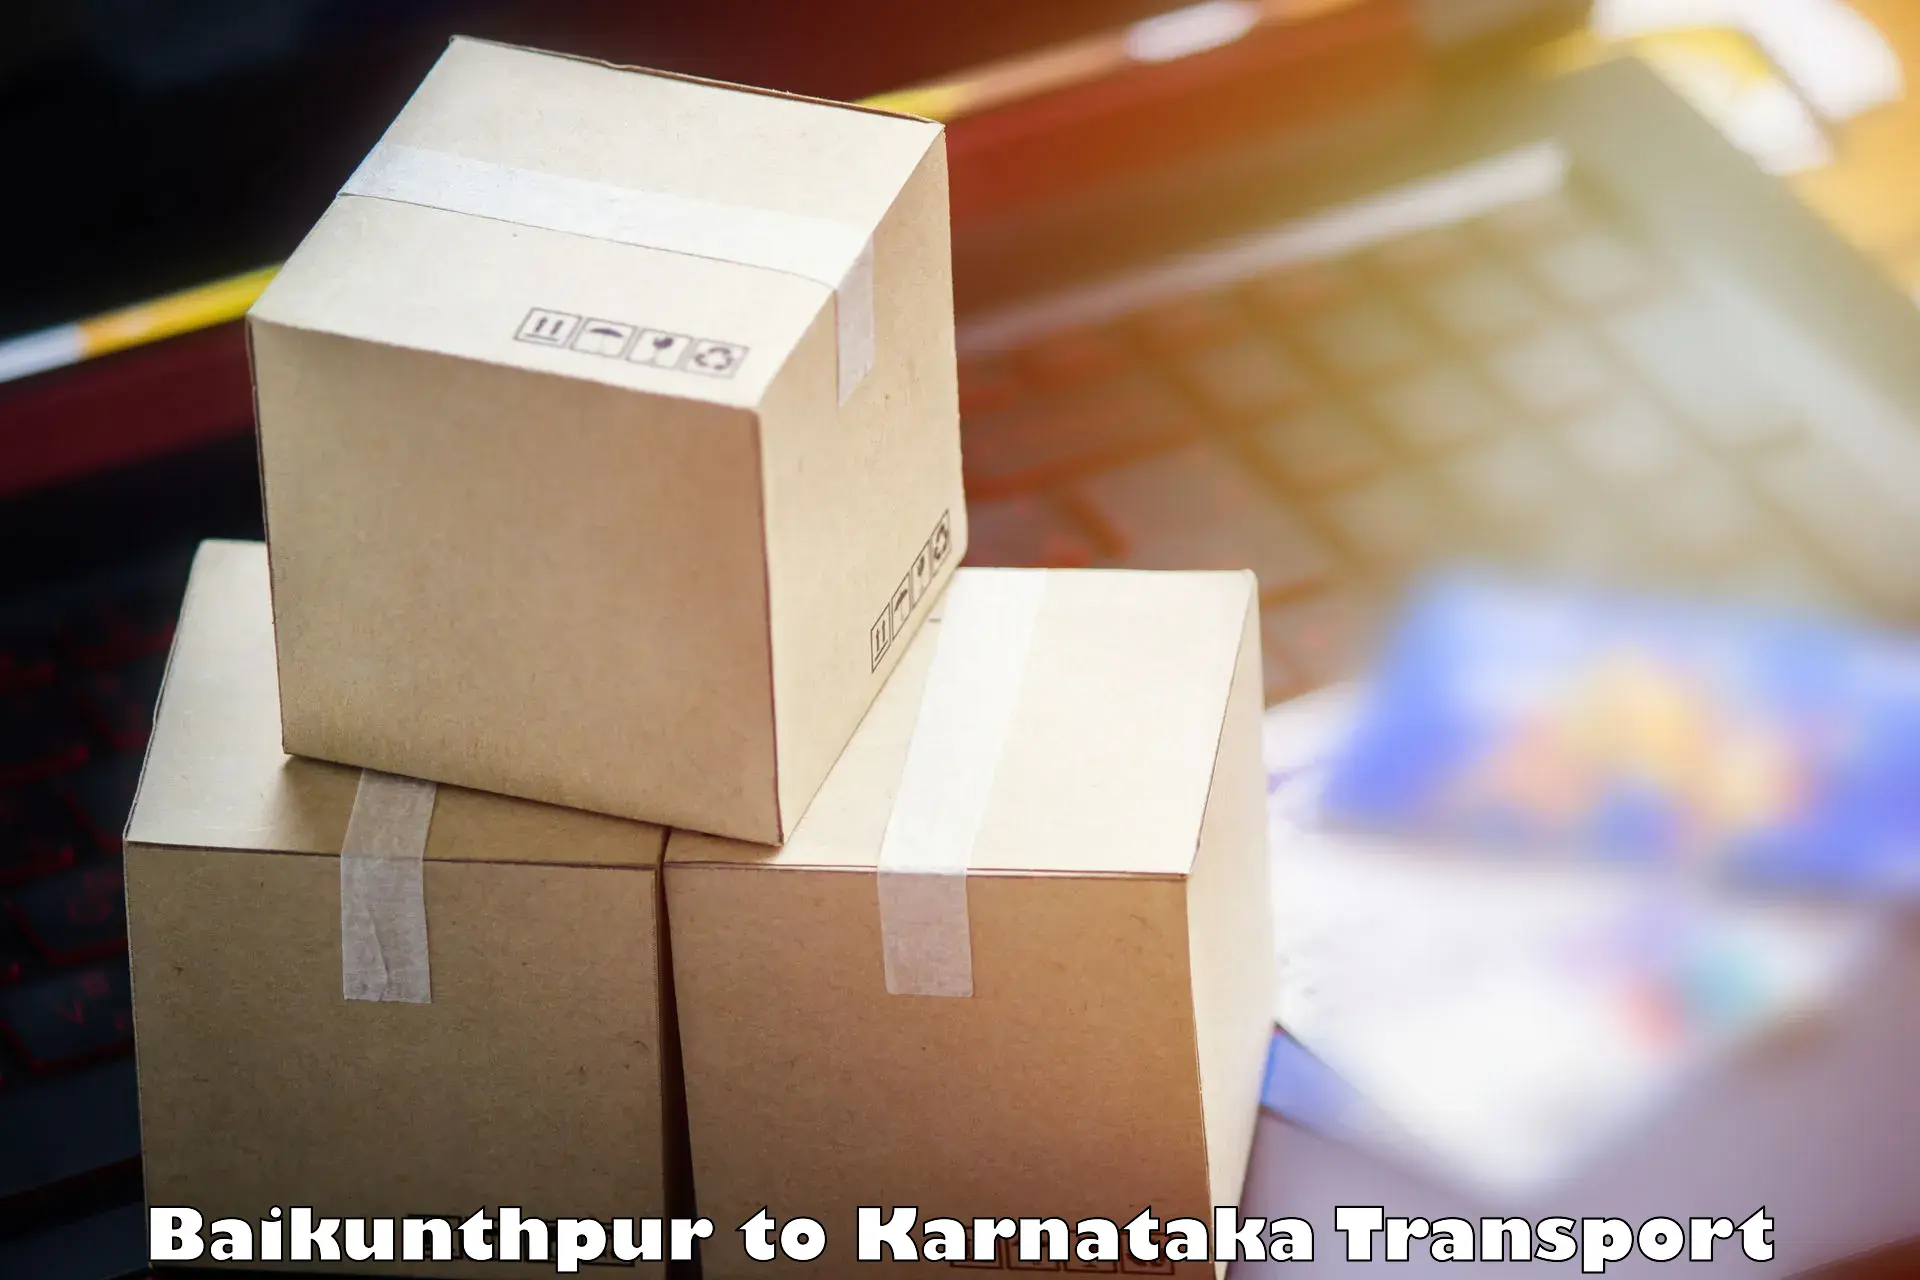 Part load transport service in India Baikunthpur to Yaragatti